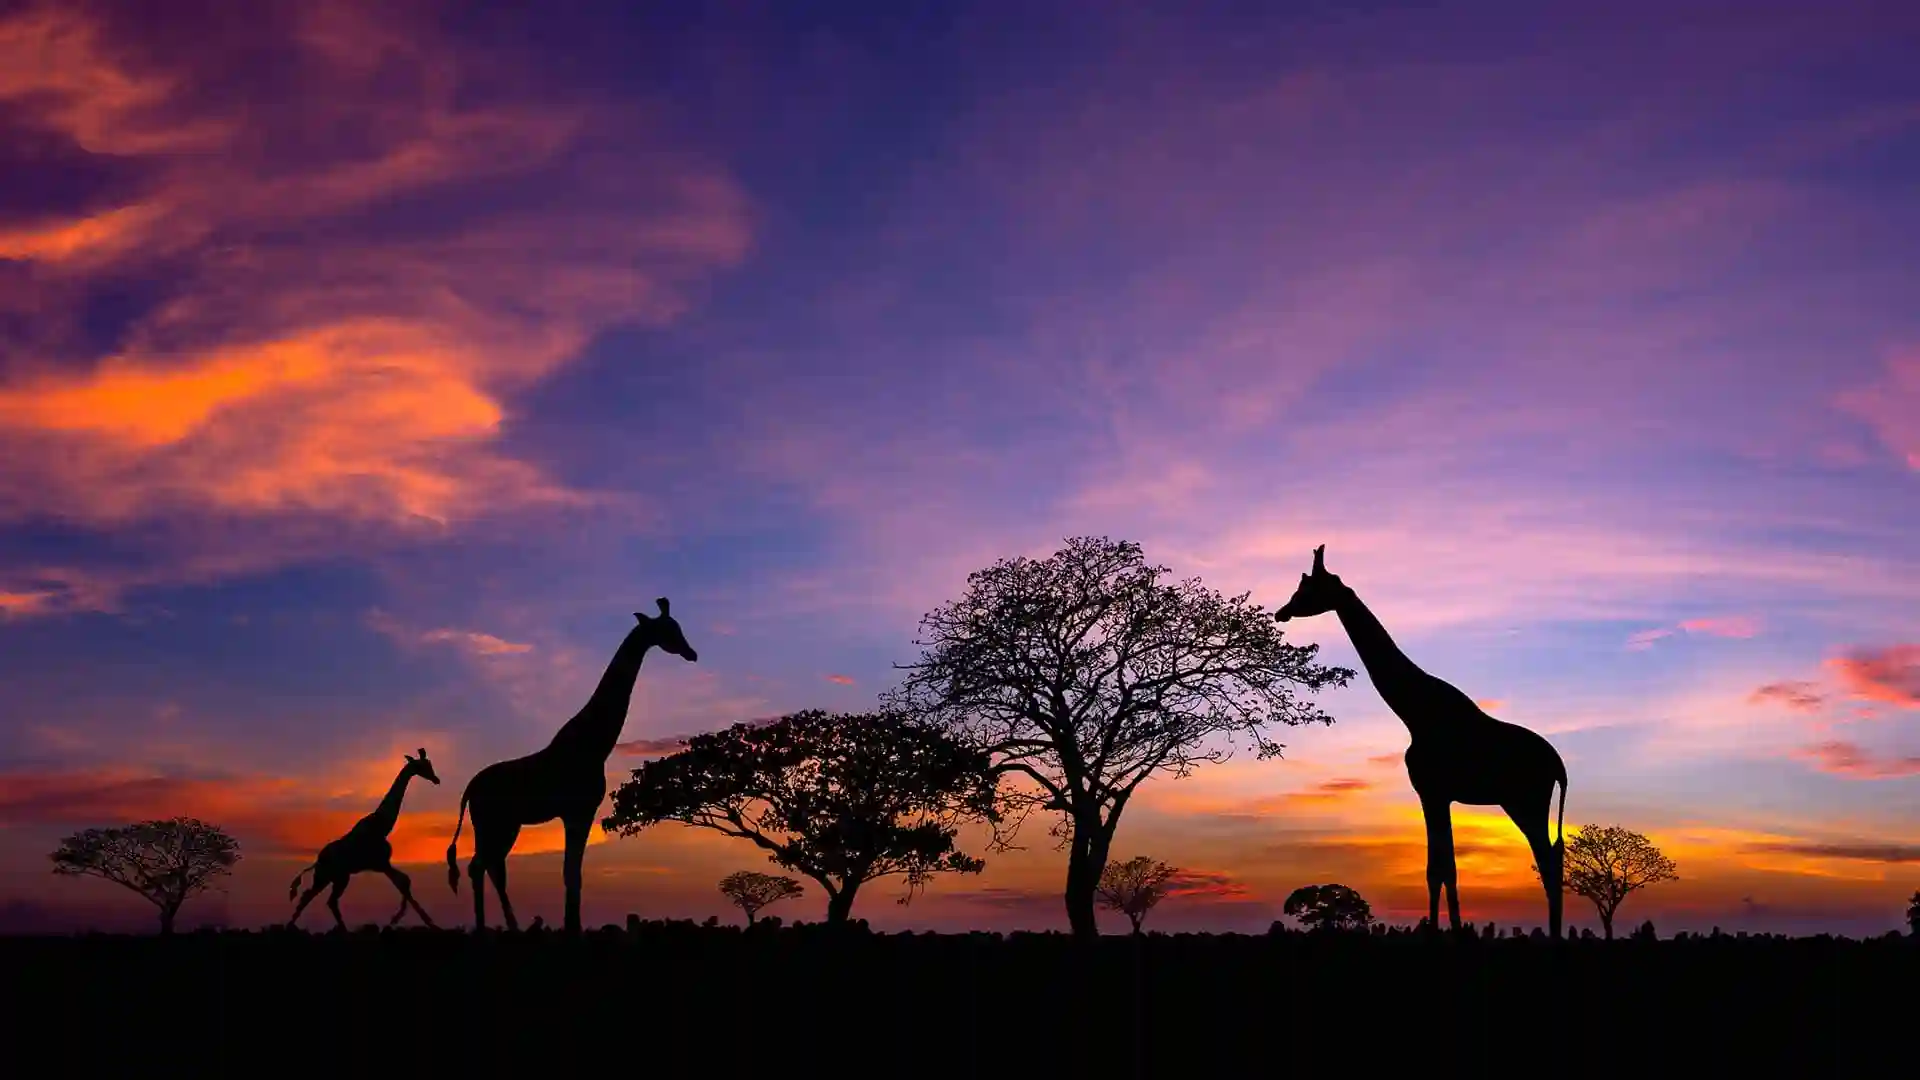 Giraffes roaming during sunset in Africa.